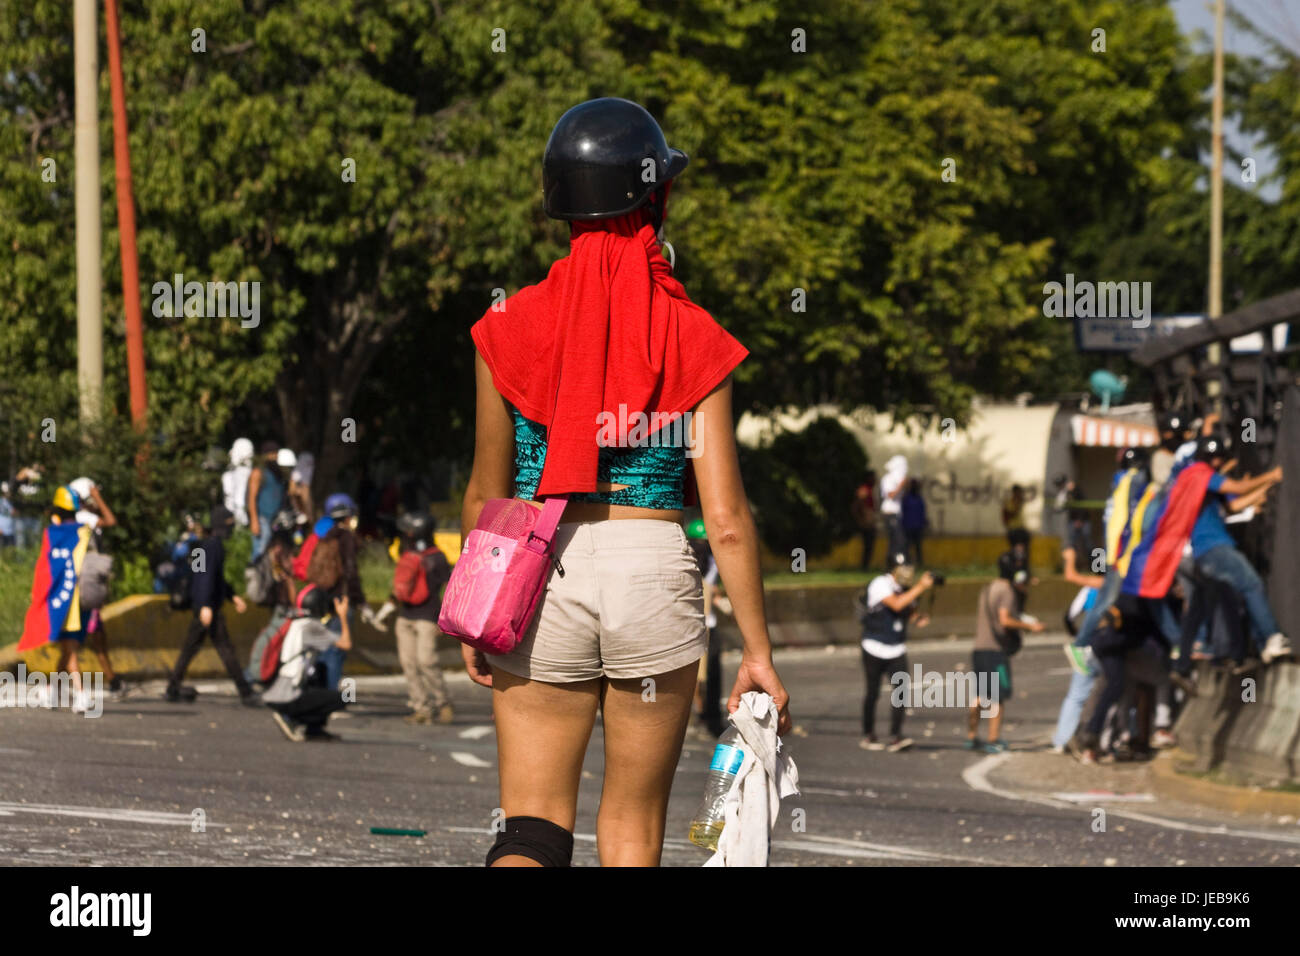 Une jeune fille manifestant observer un groupe de manifestant des affrontements avec les forces de sécurité lors d'une manifestation sur la voie publique. Banque D'Images